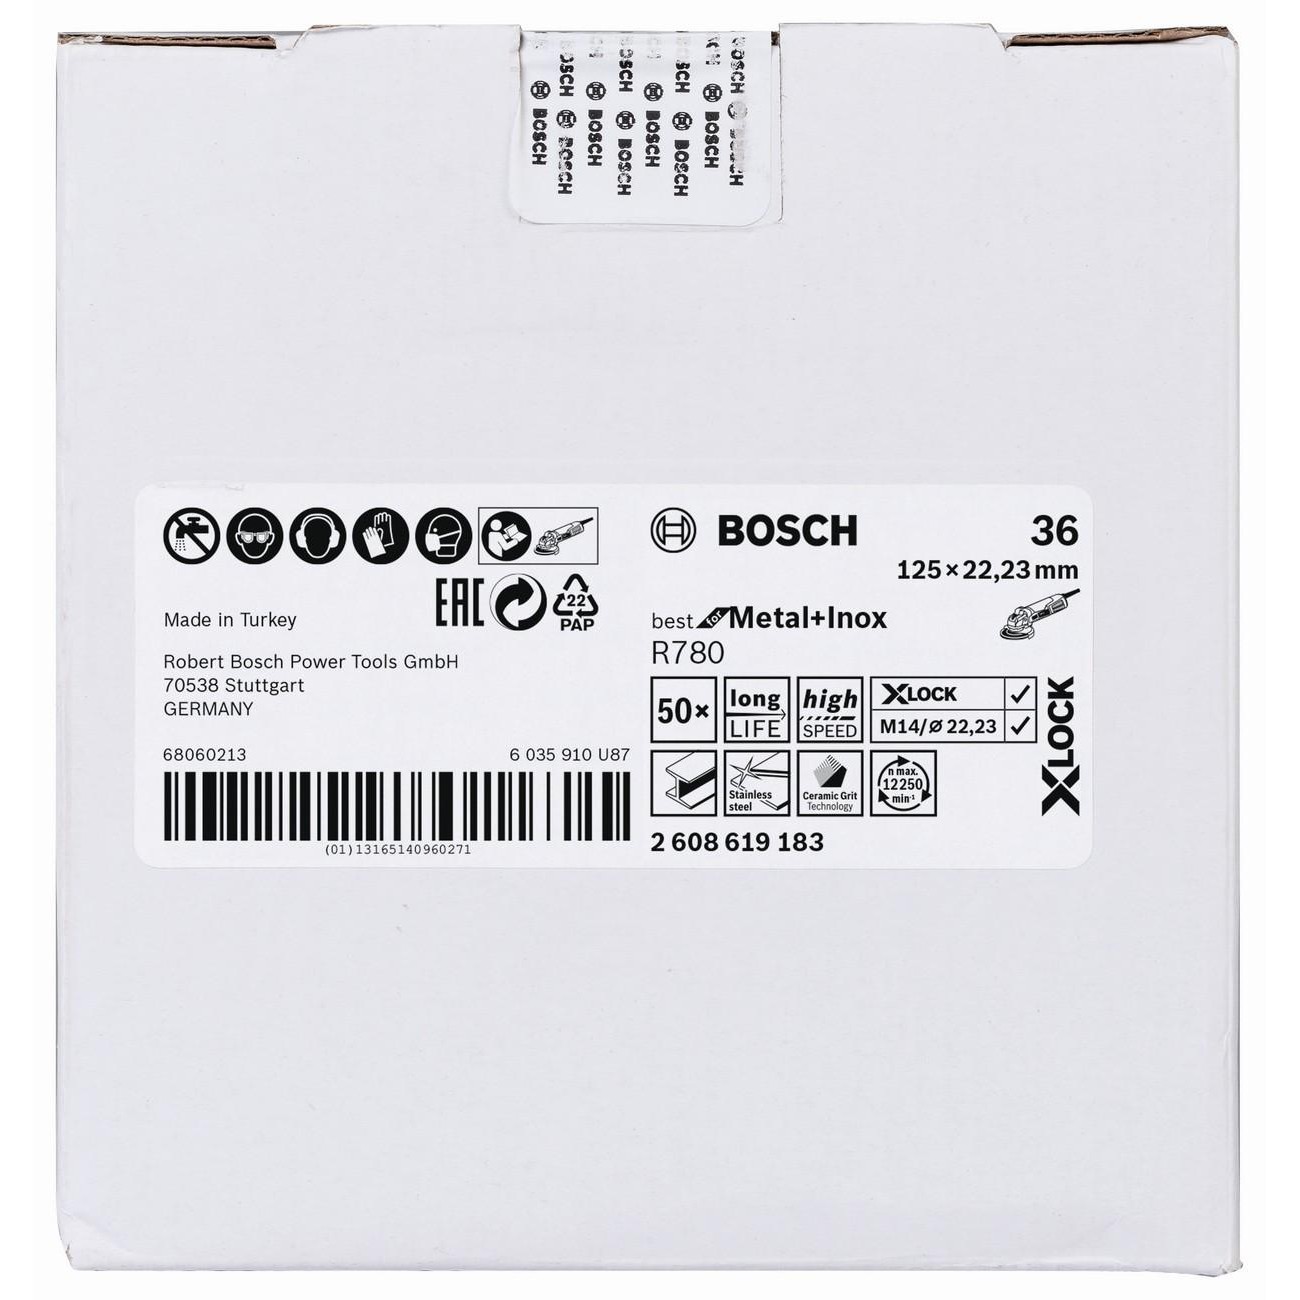 BOSCH Professional X-LOCK R780 Фибърдиск със звездообразен отвор за метал и инокс 125 мм G36 (2608619183)